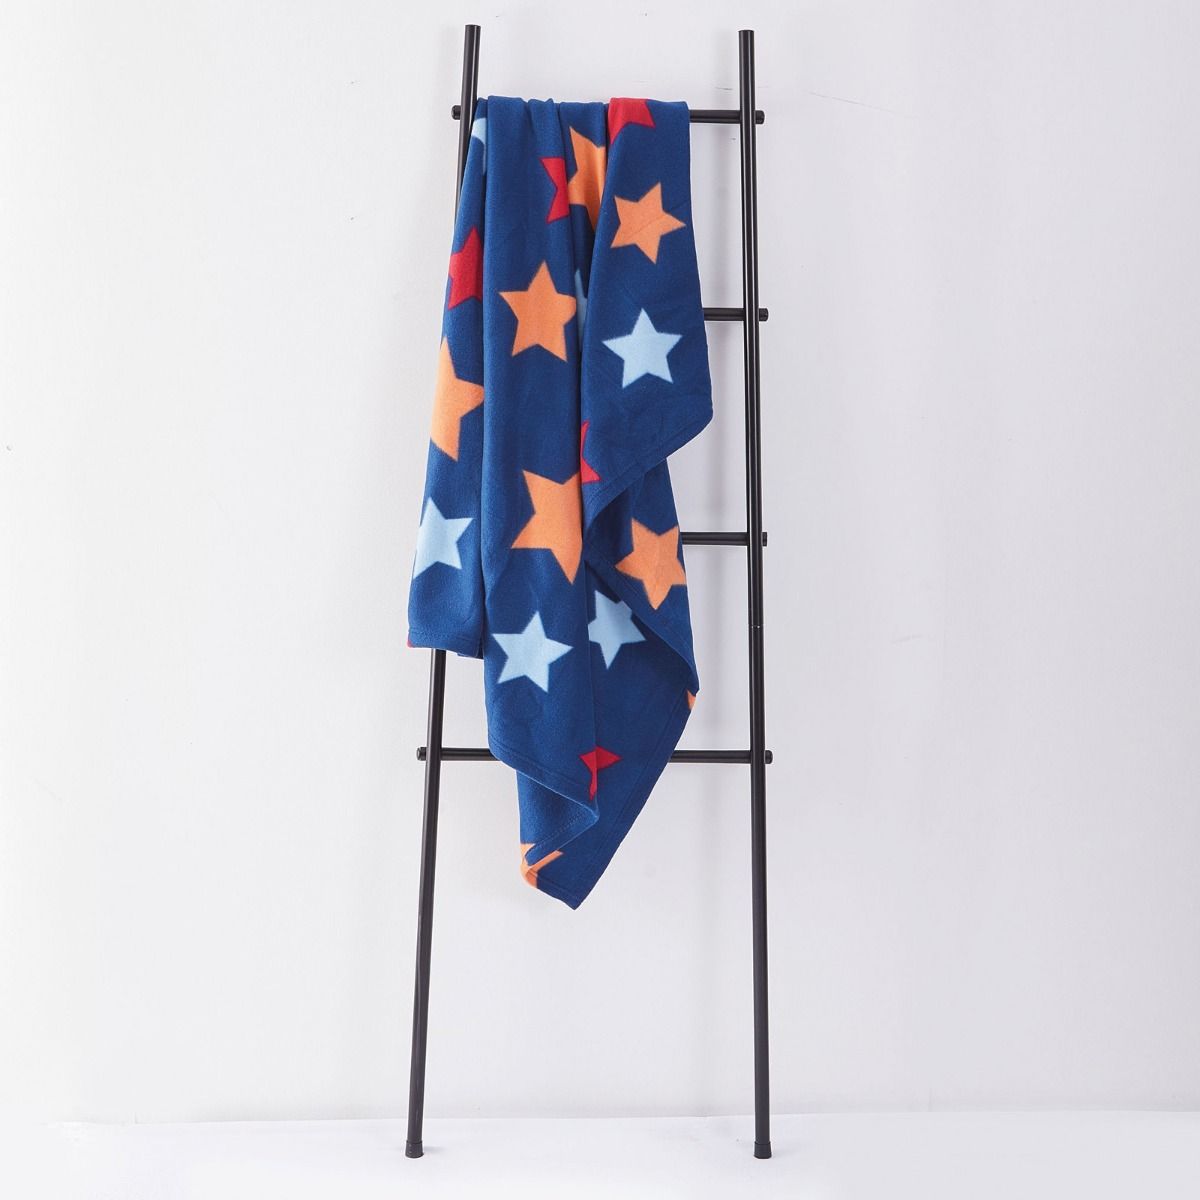 Fleece Blanket 120x150cm - Star